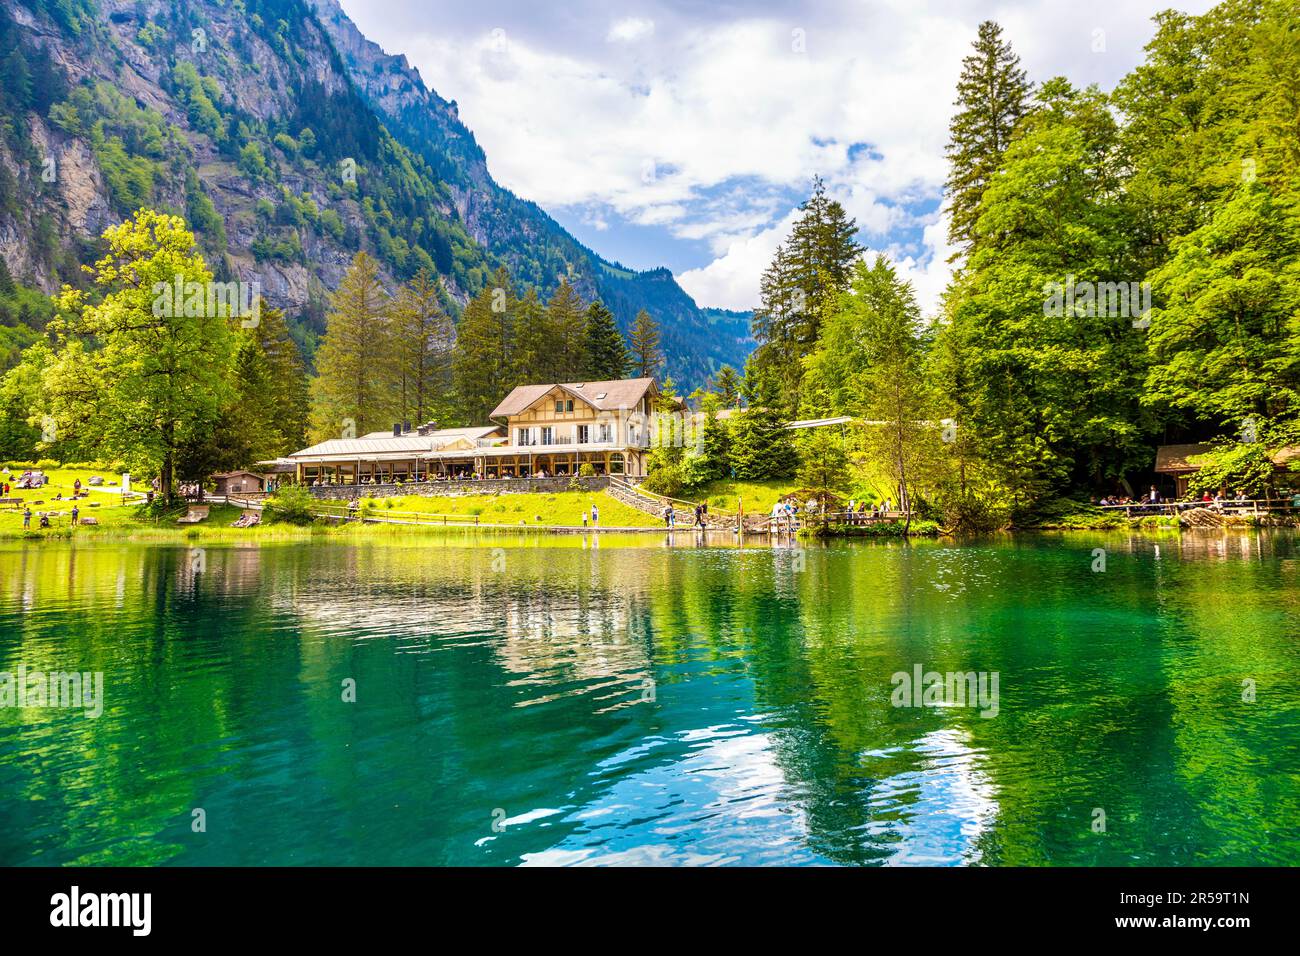 Eaux claires et azur du lac Blausee (lac bleu) entouré d'une forêt alpine, Suisse Banque D'Images